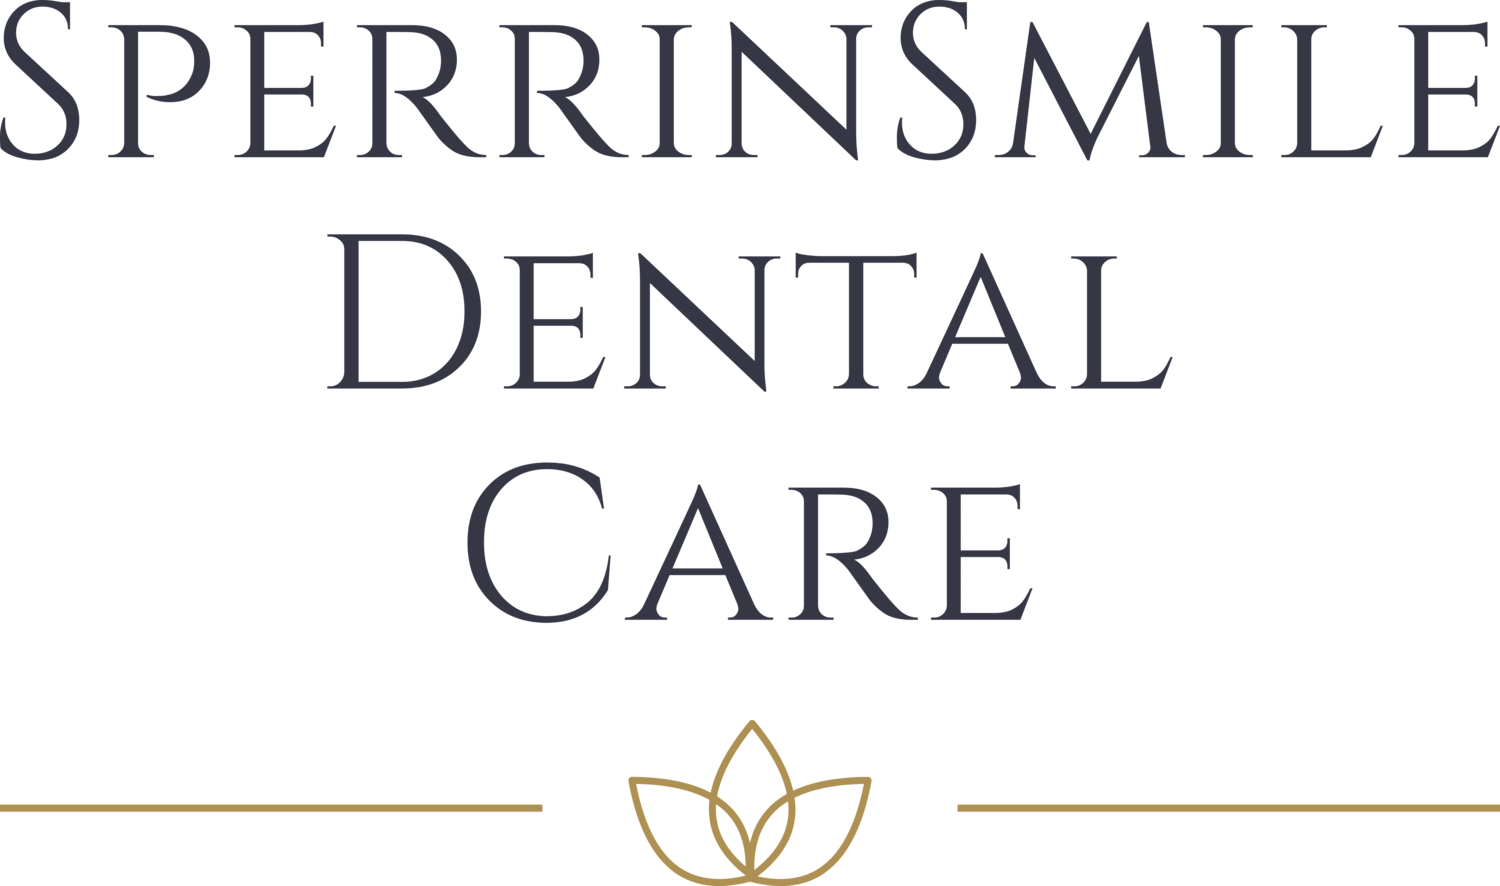 SperrinSmile Dental Care Dungiven